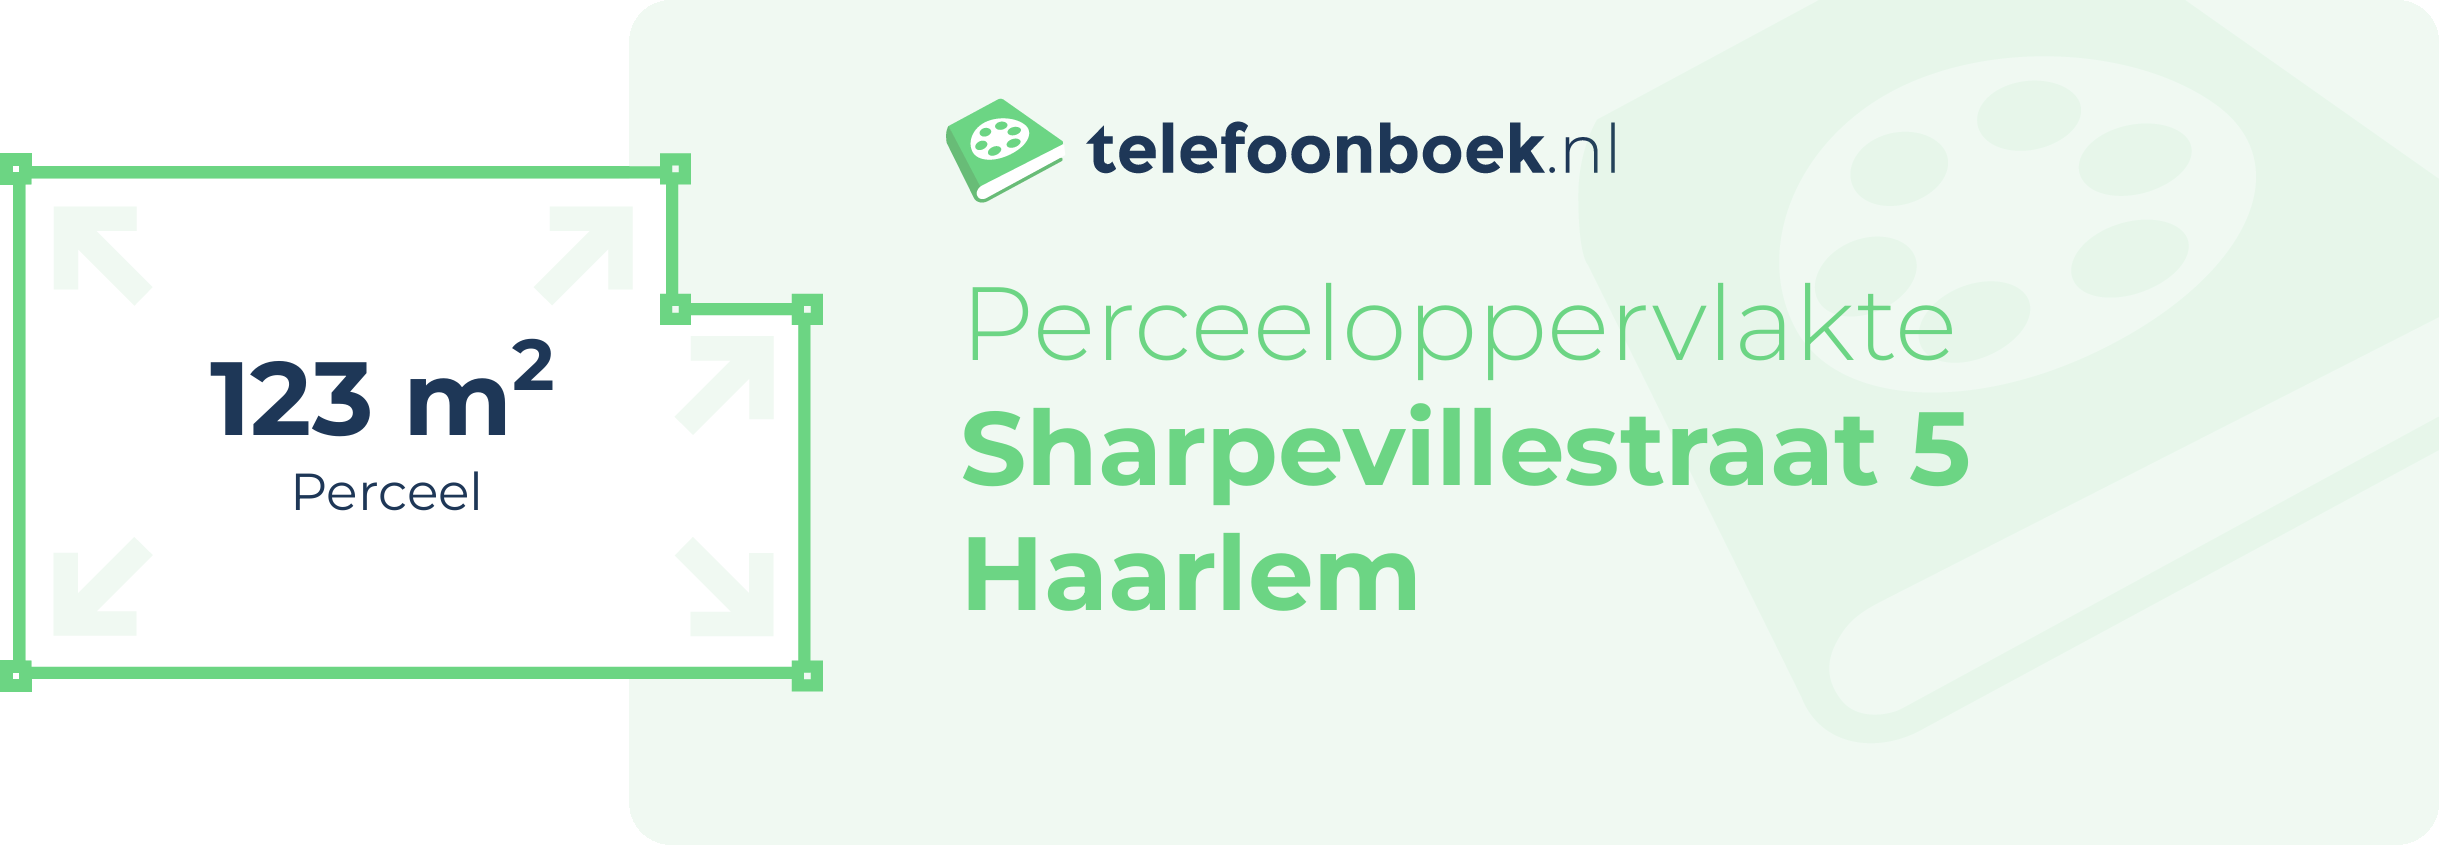 Perceeloppervlakte Sharpevillestraat 5 Haarlem